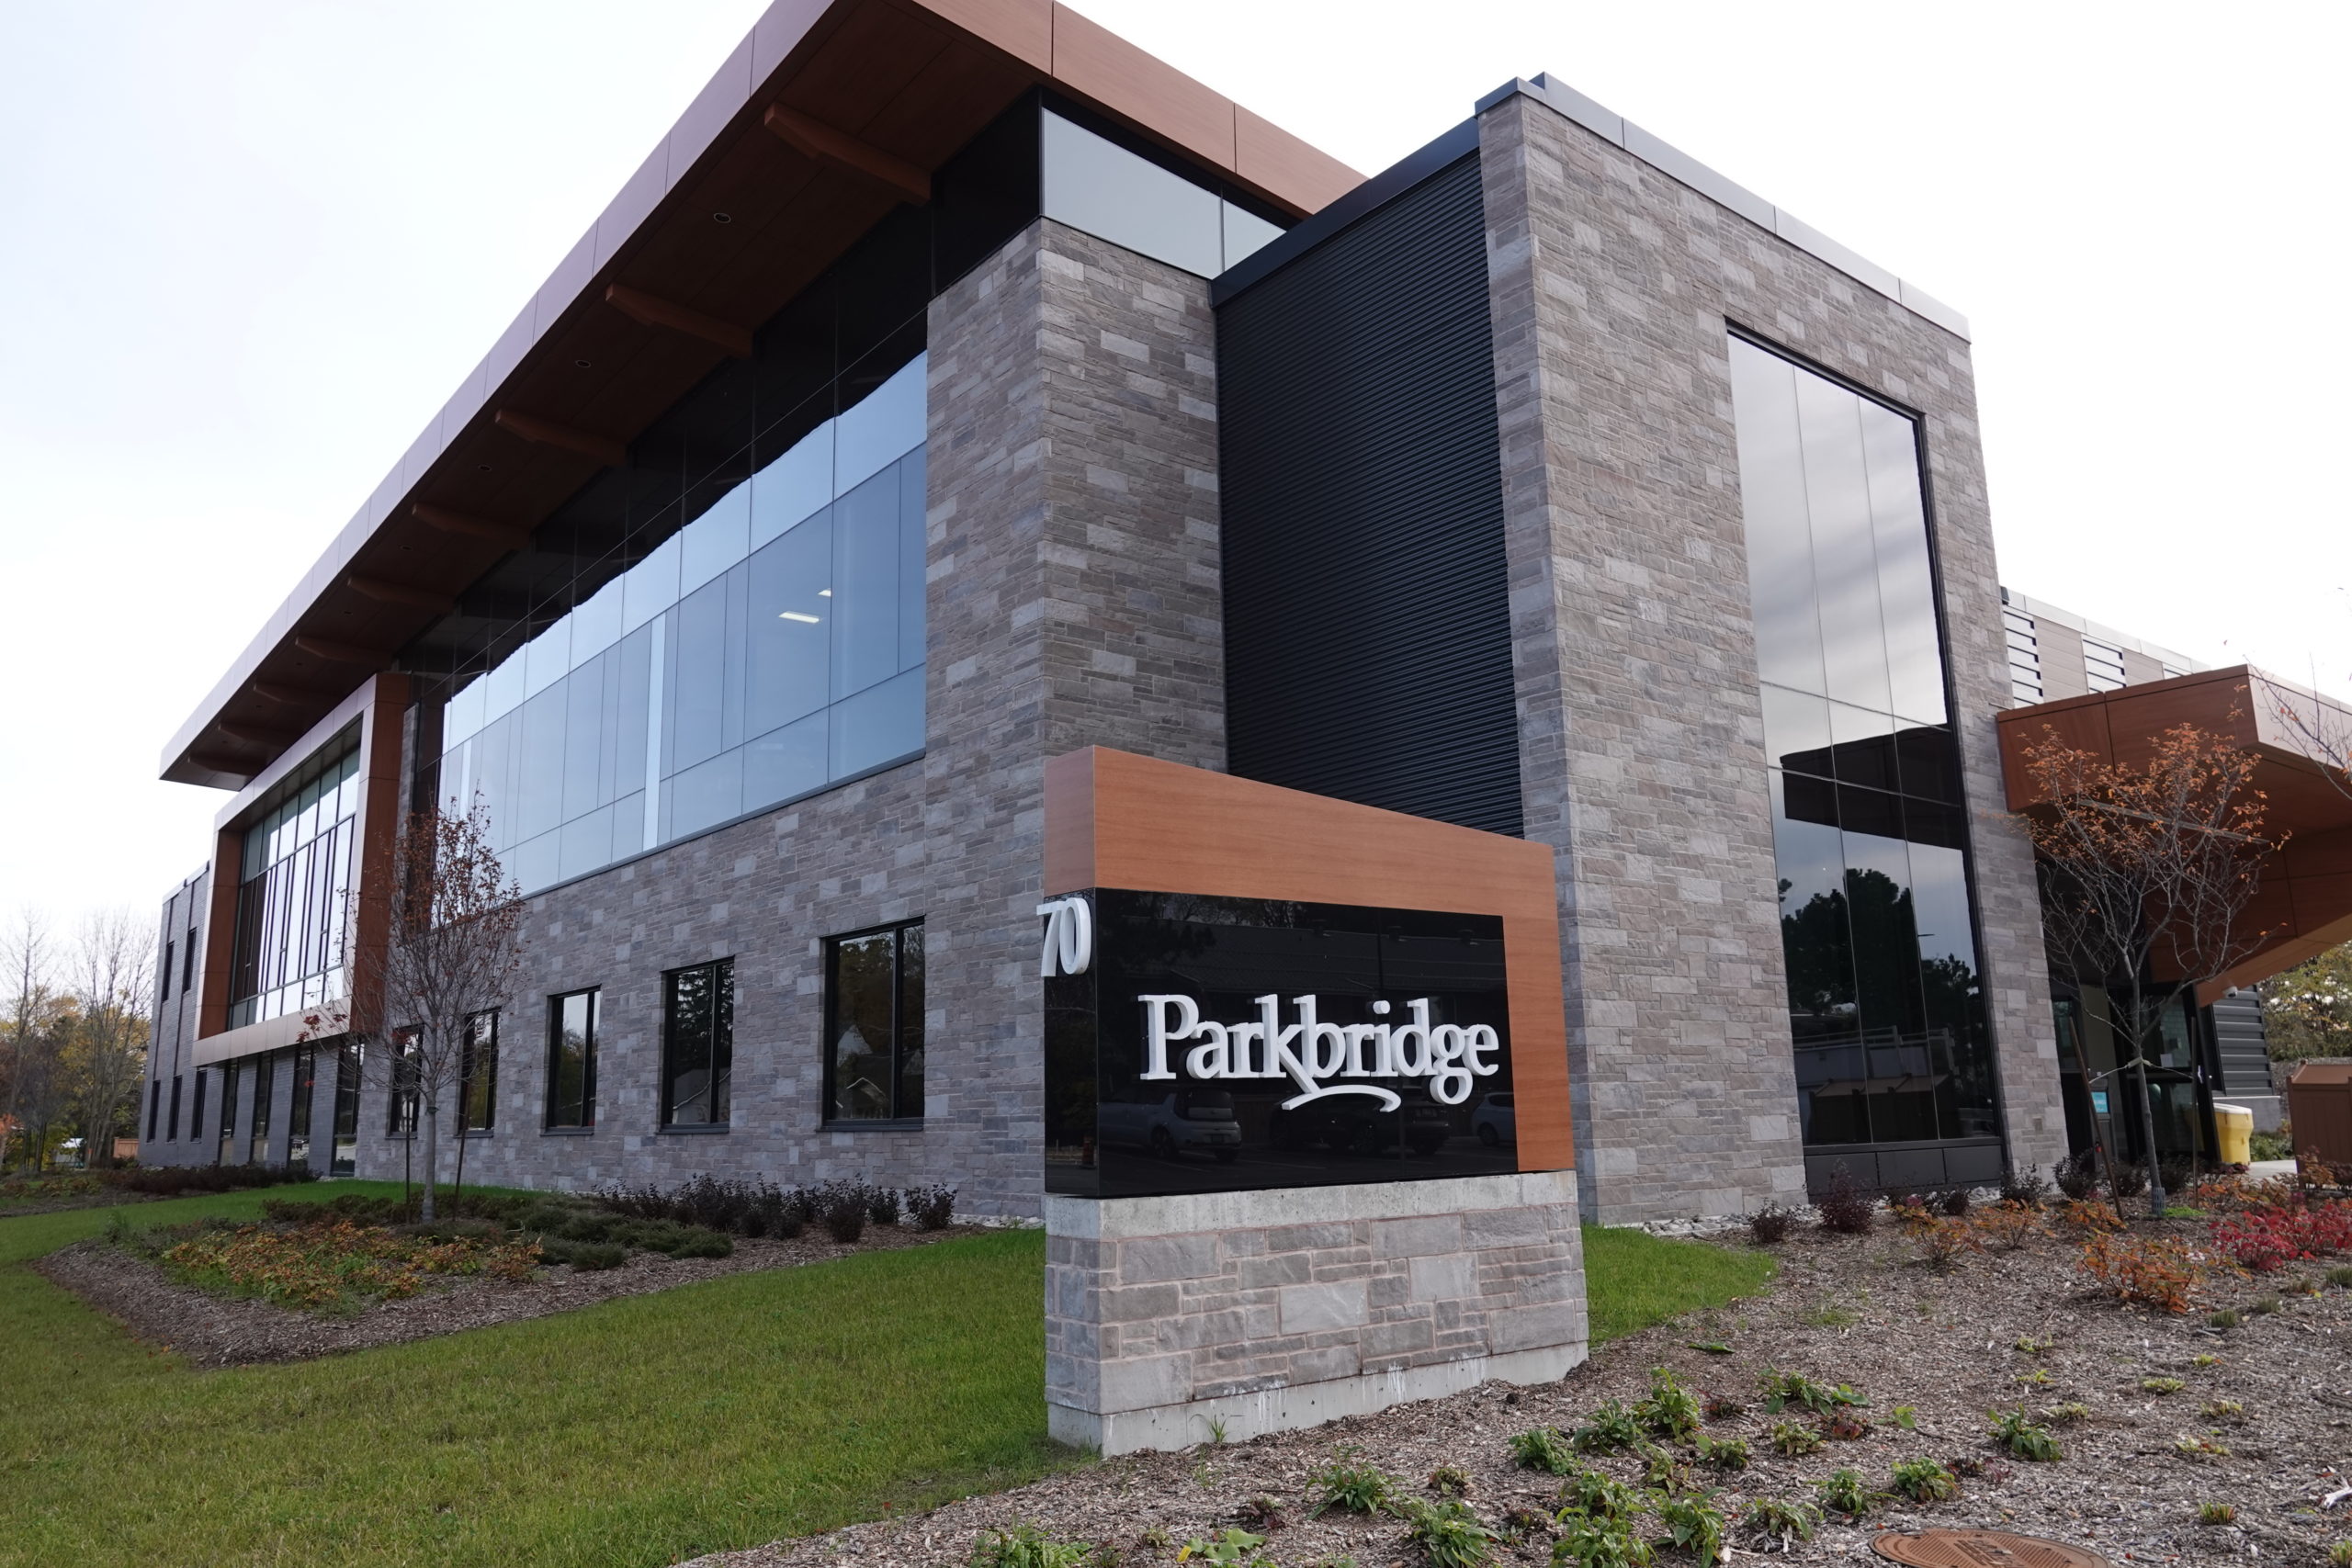 Parkbridge office building